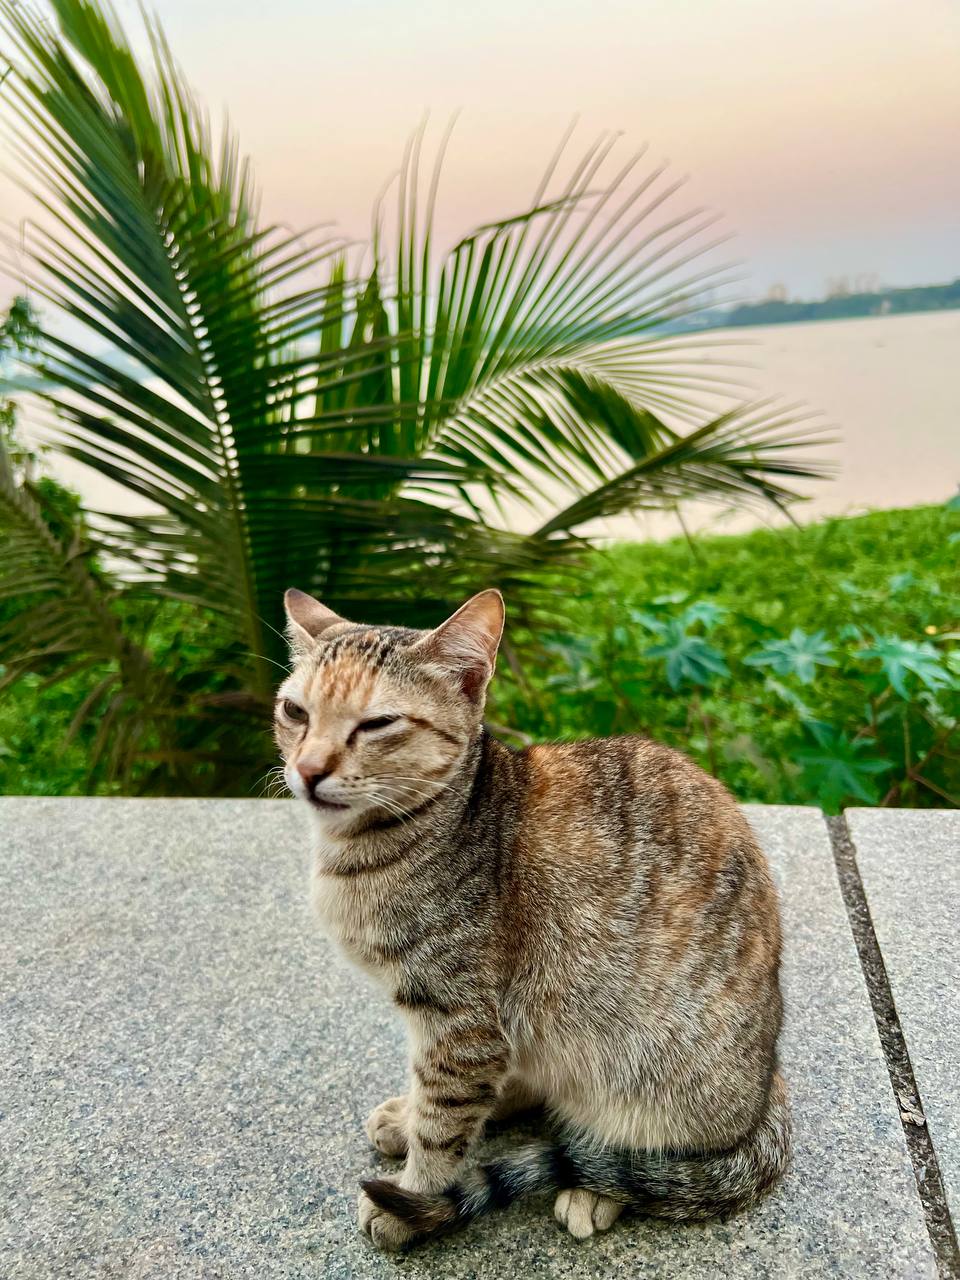 a cat sitting on a concrete ledge